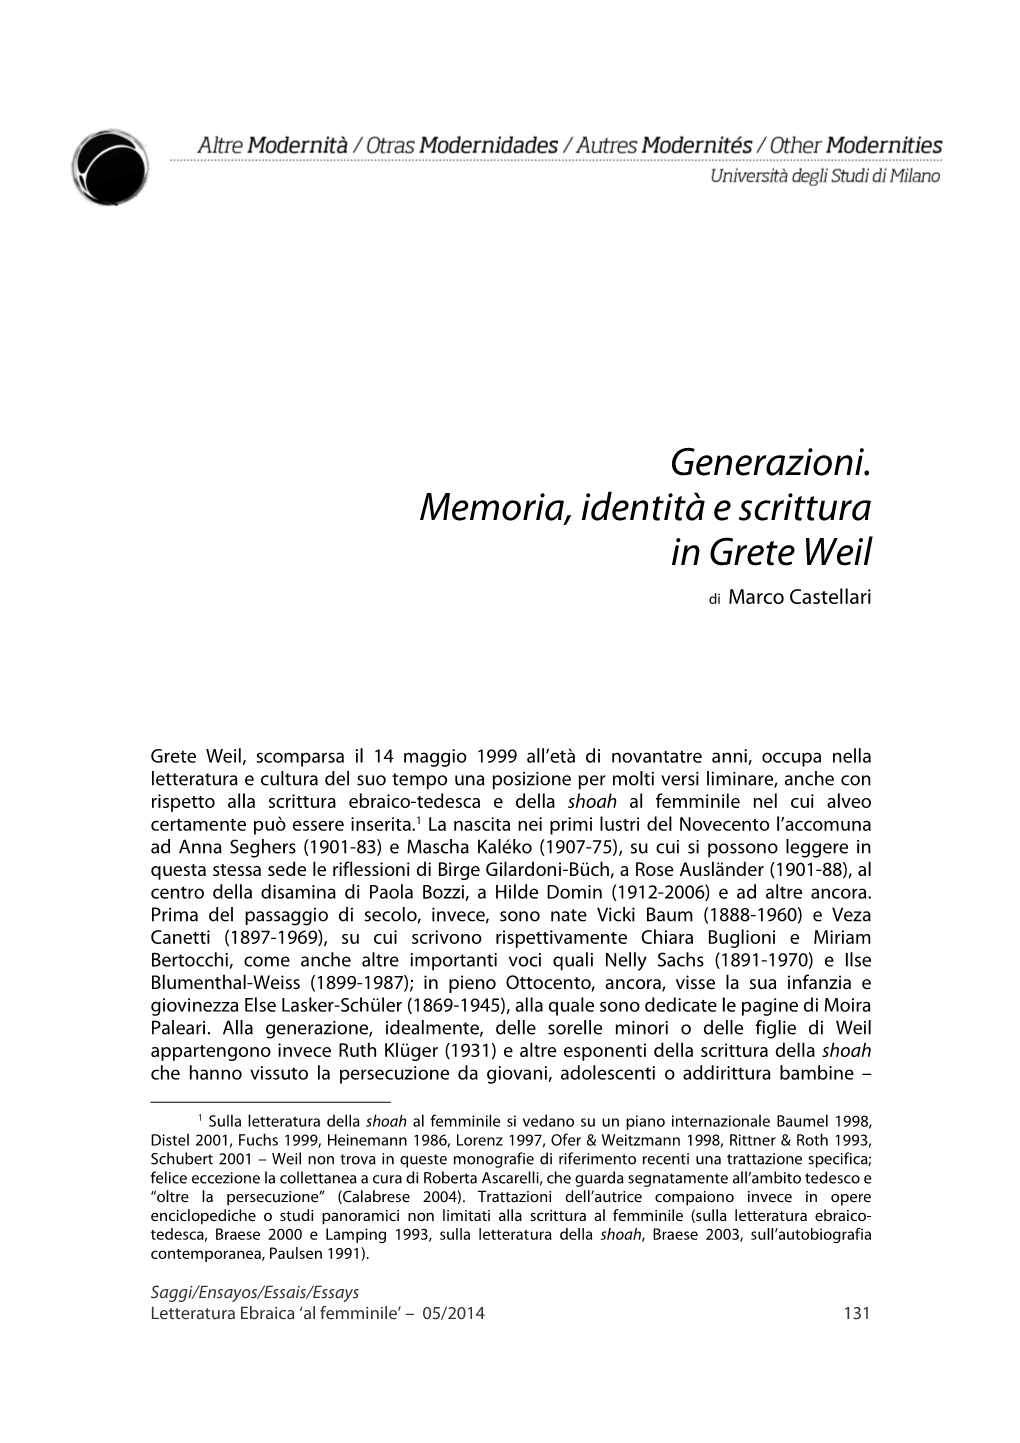 Generazioni. Memoria, Identità E Scrittura in Grete Weil